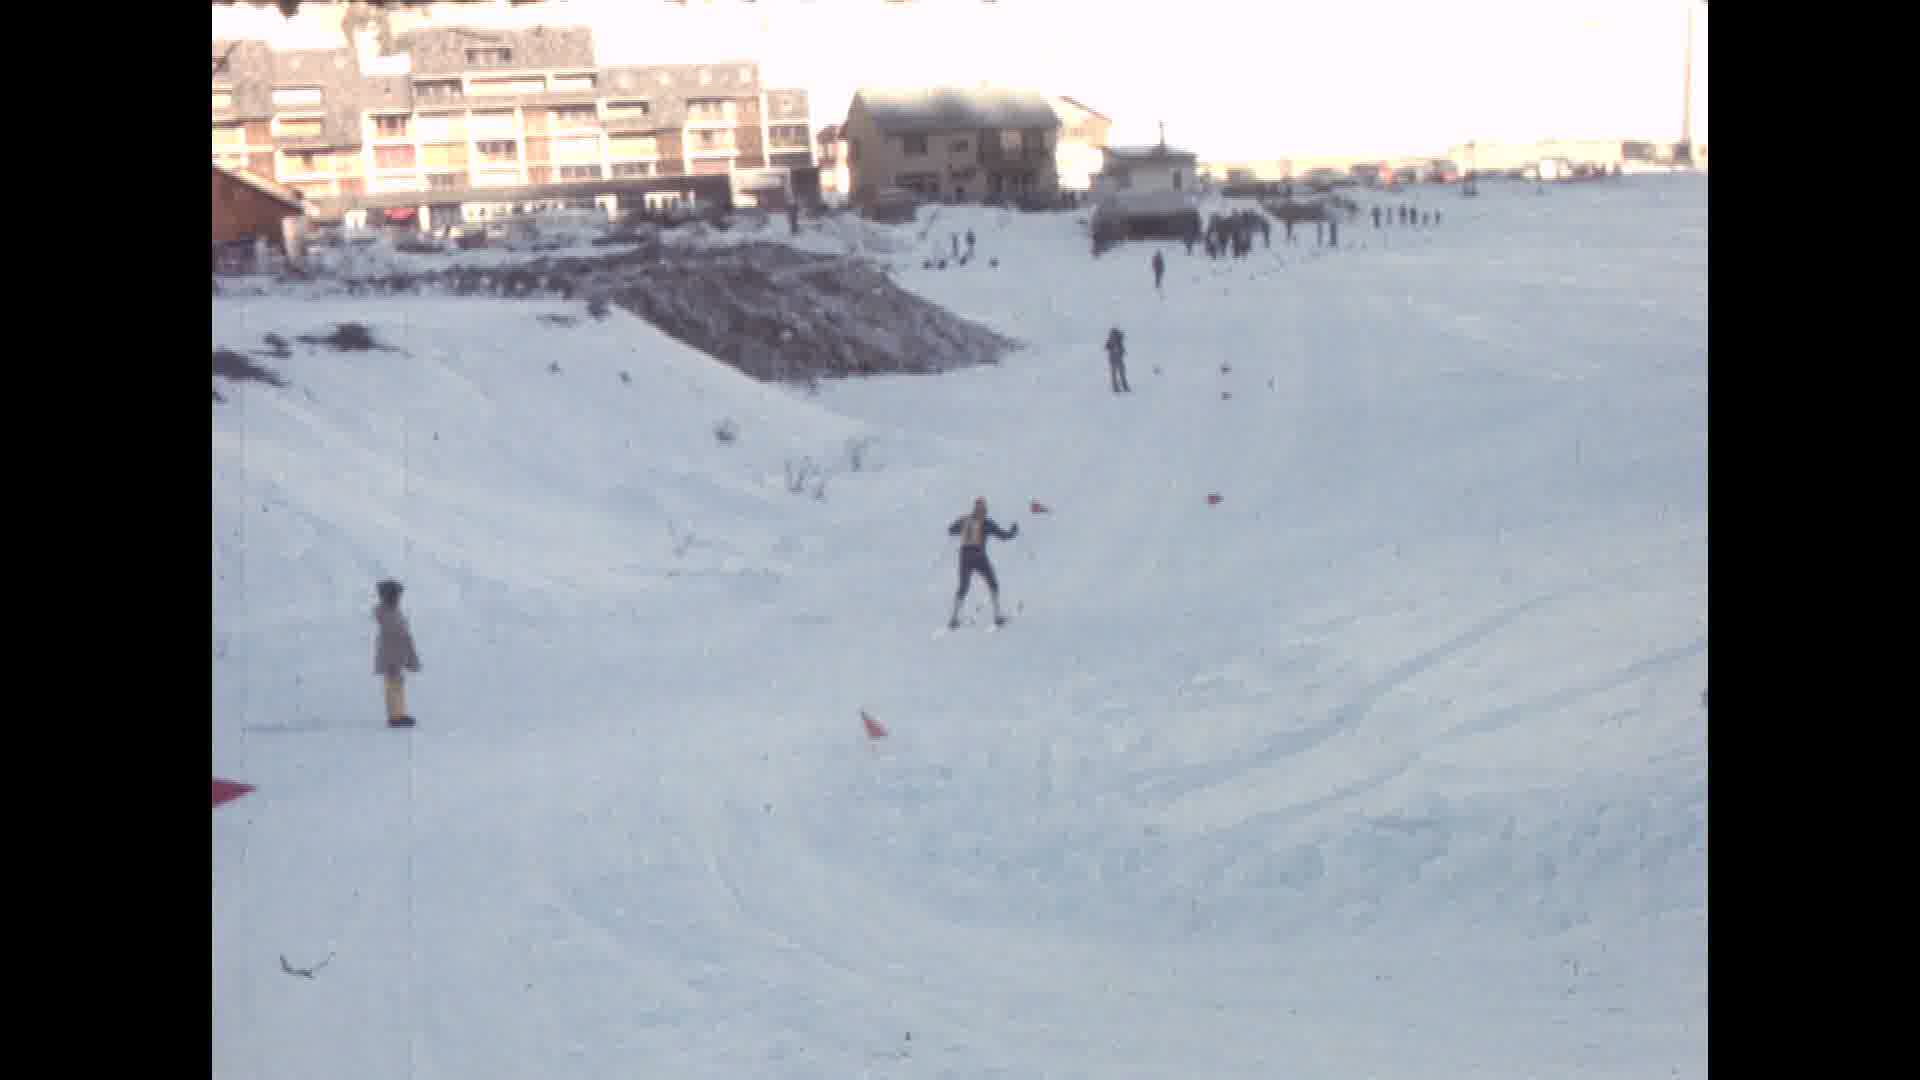 Compétitions ski de fond, Montgenèvre